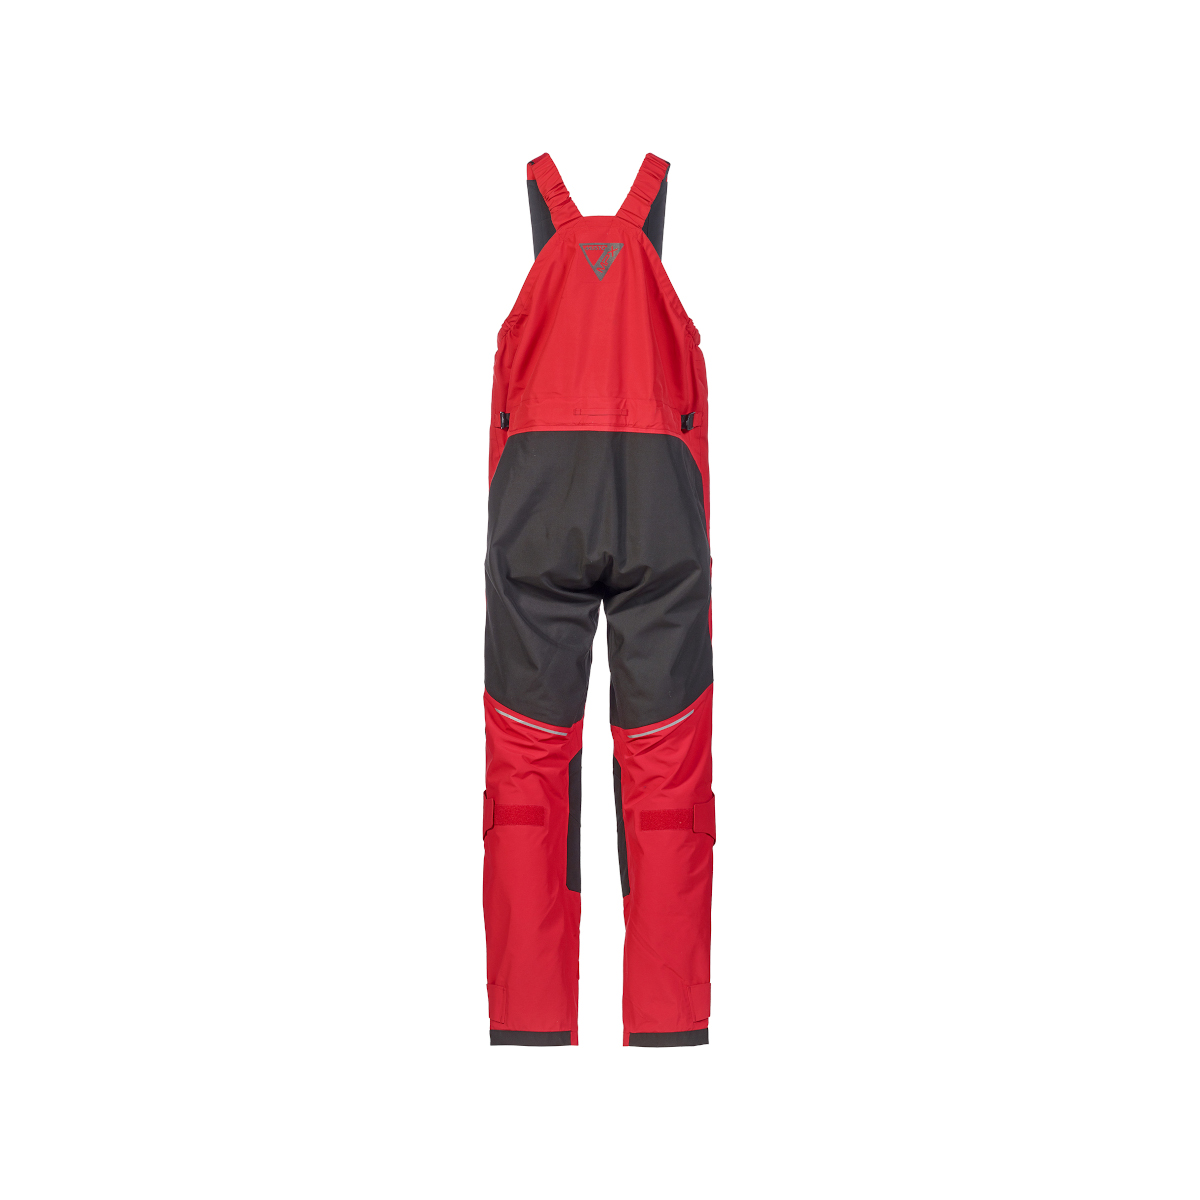 Musto MPX Gore-Tex Pro Offshore 2.0 pantalon de voile homme rouge, taille L